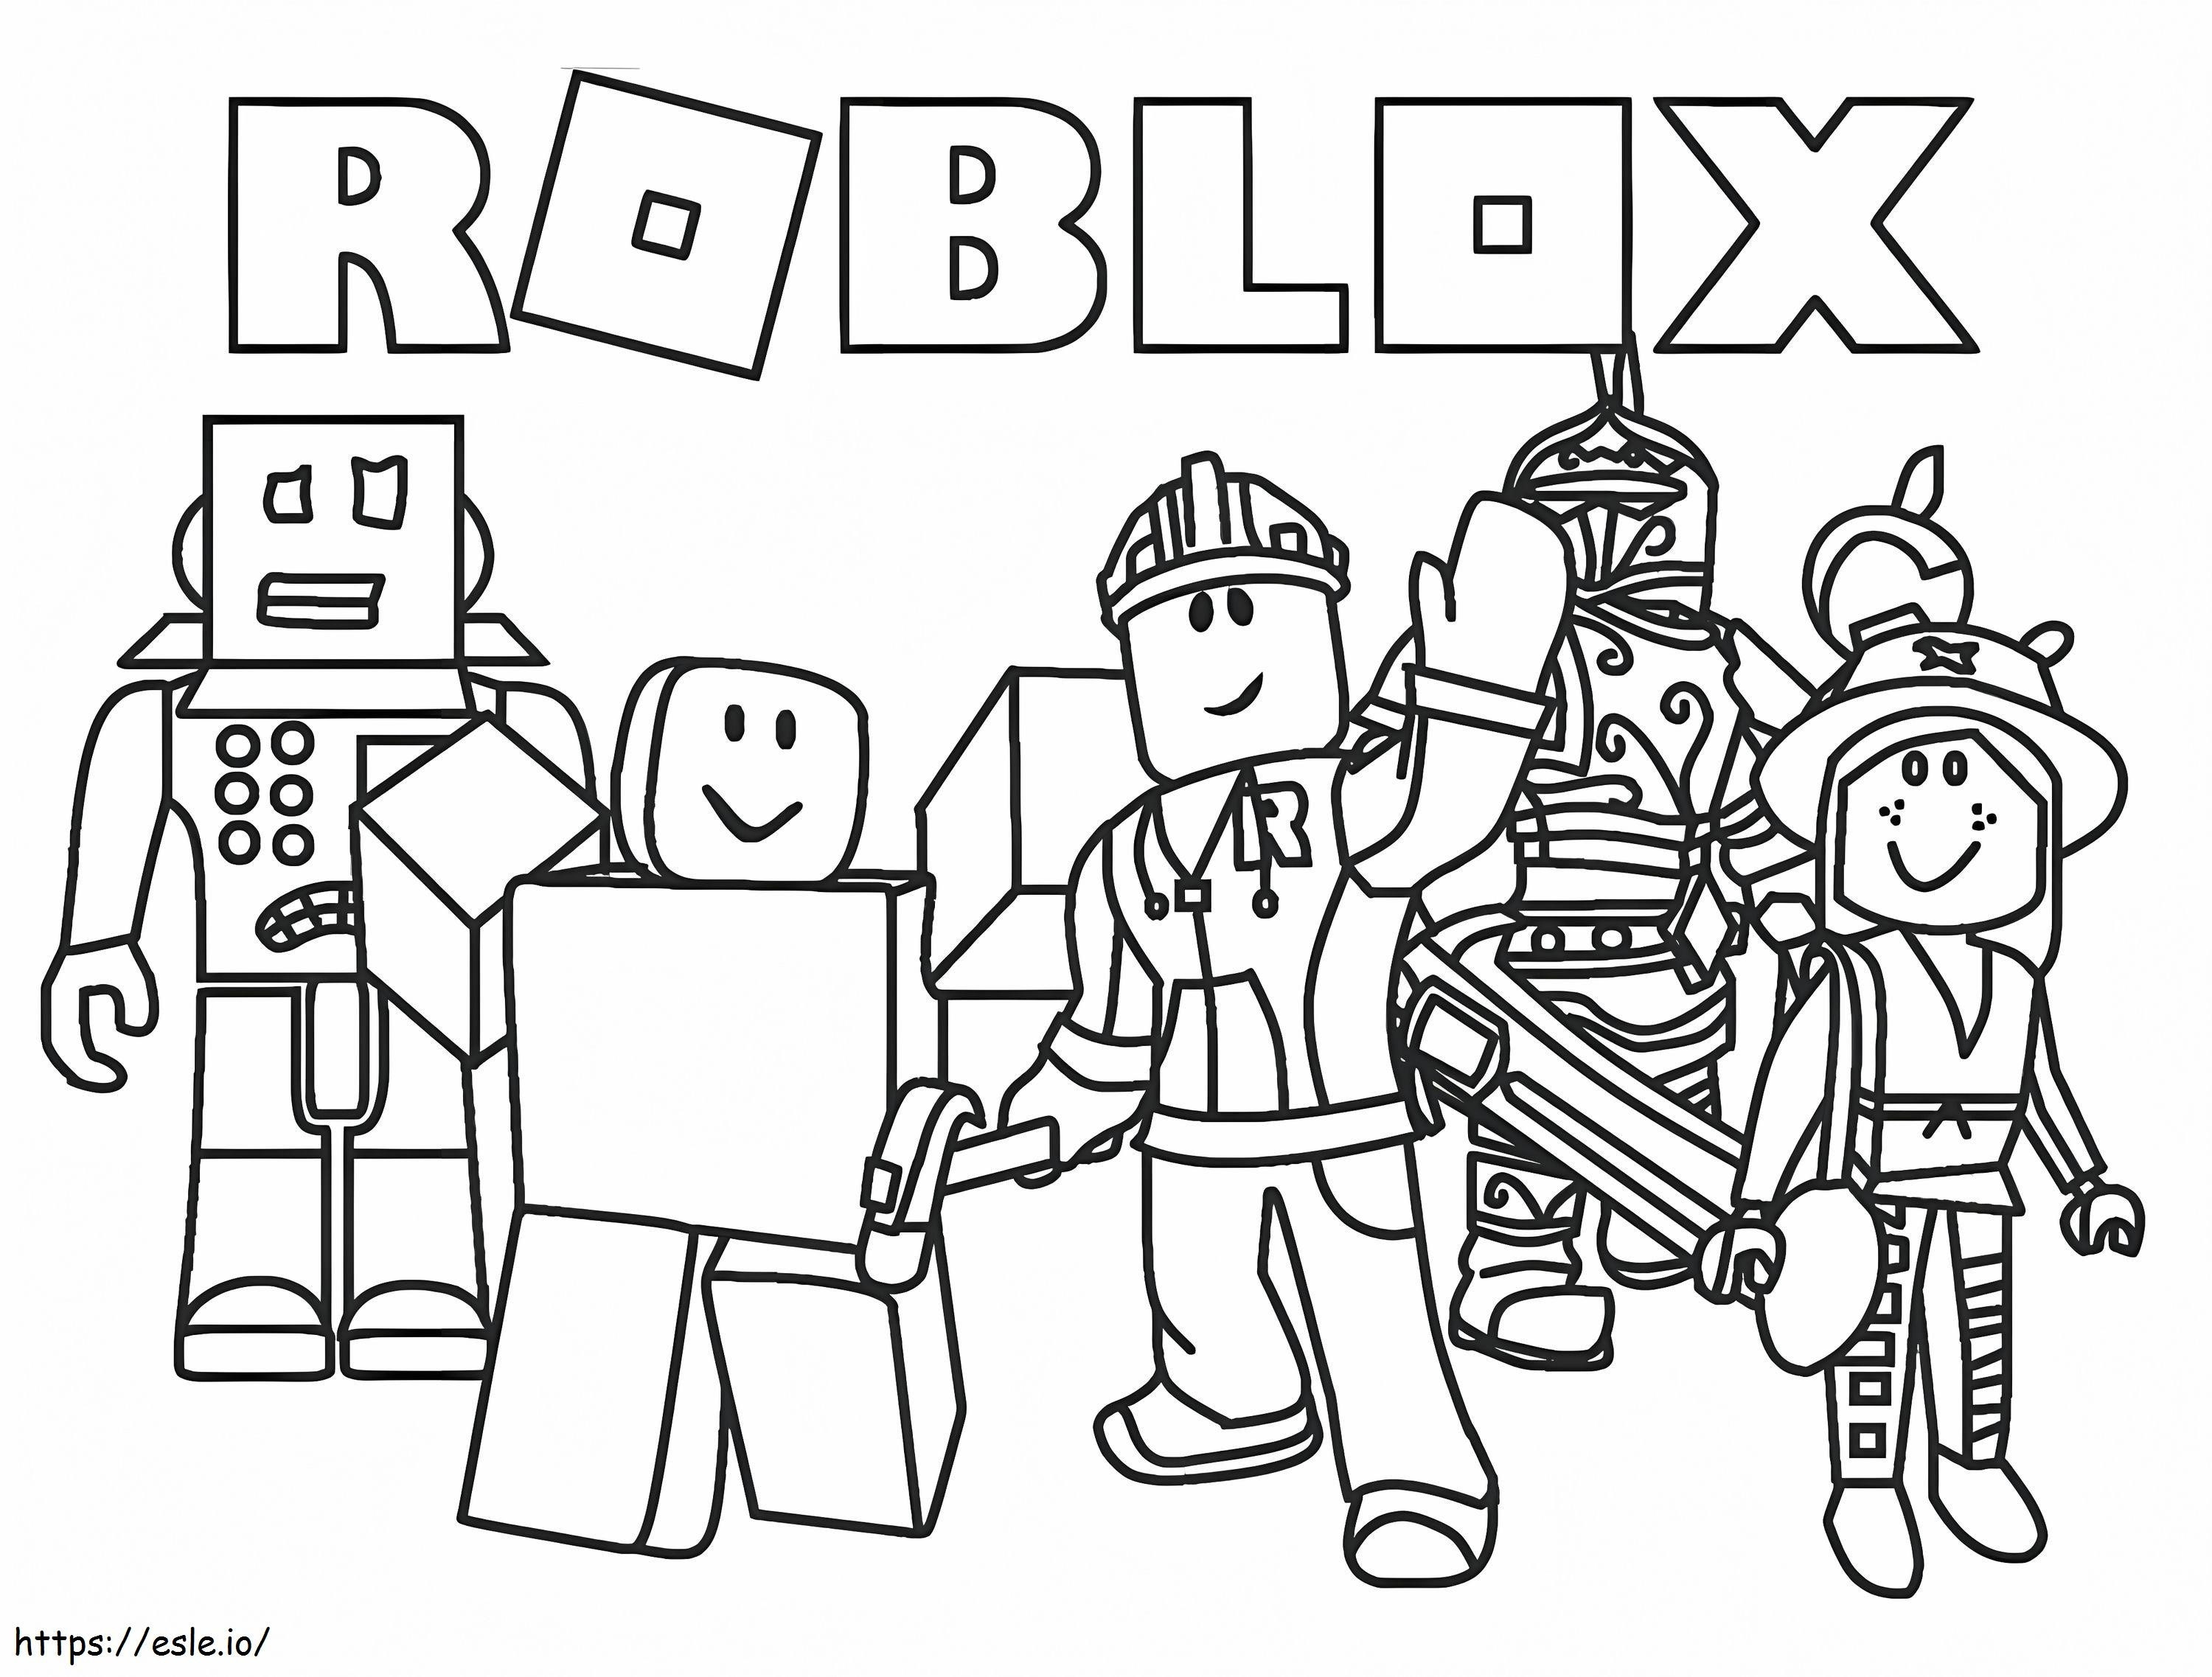 Roblox-Charaktere ausmalbilder